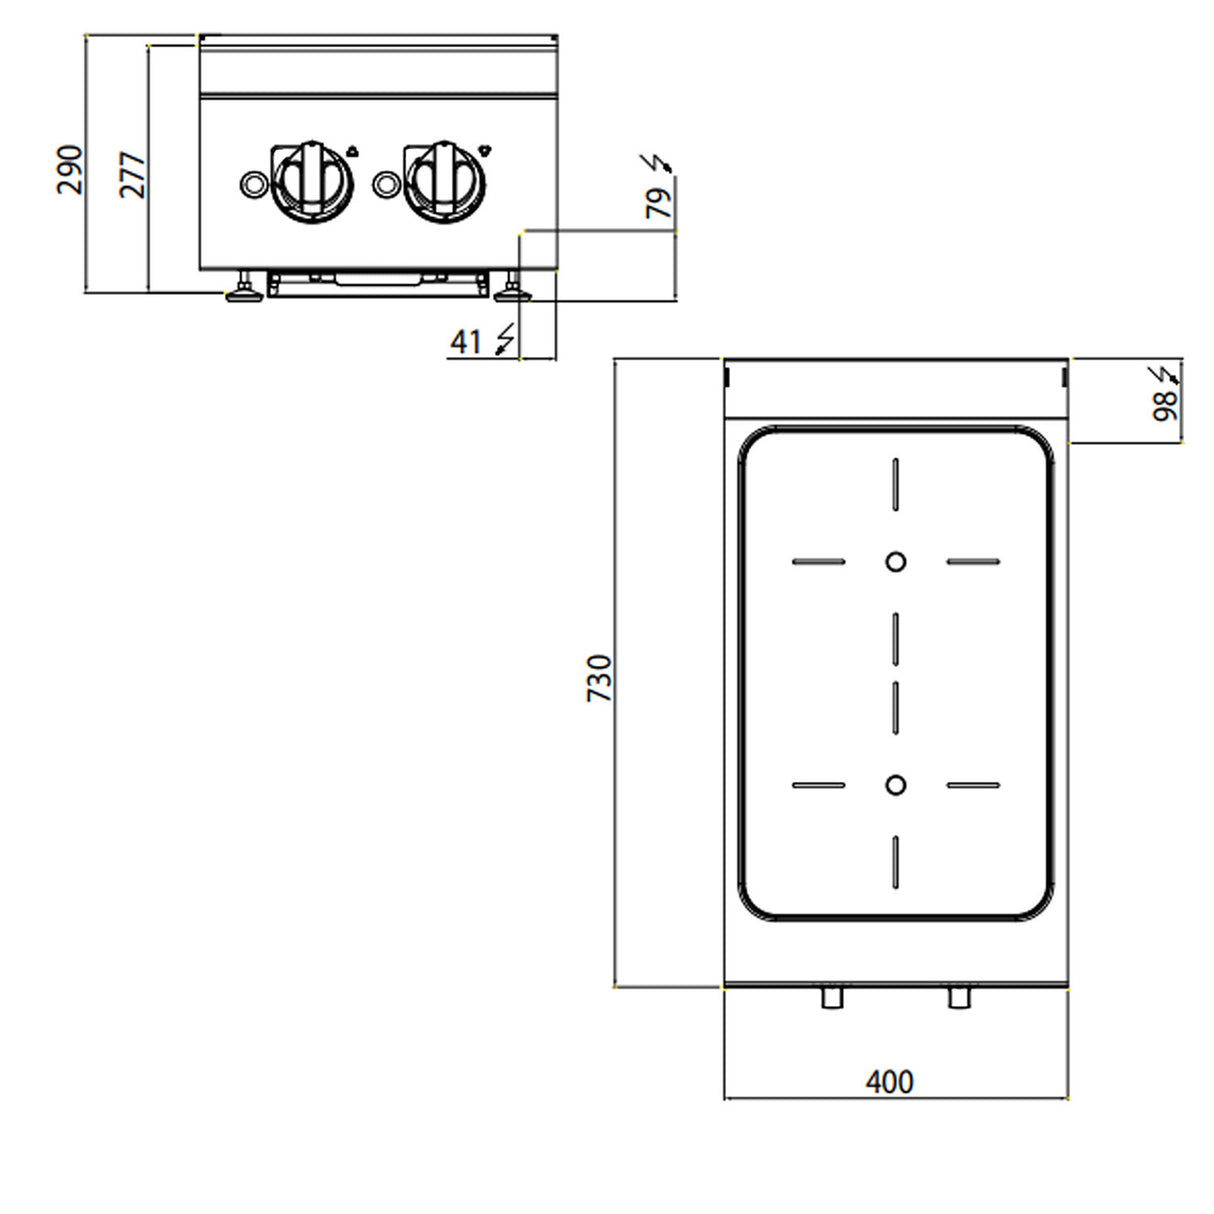 Induktions komfur - 2 kogeplader (7 kW)